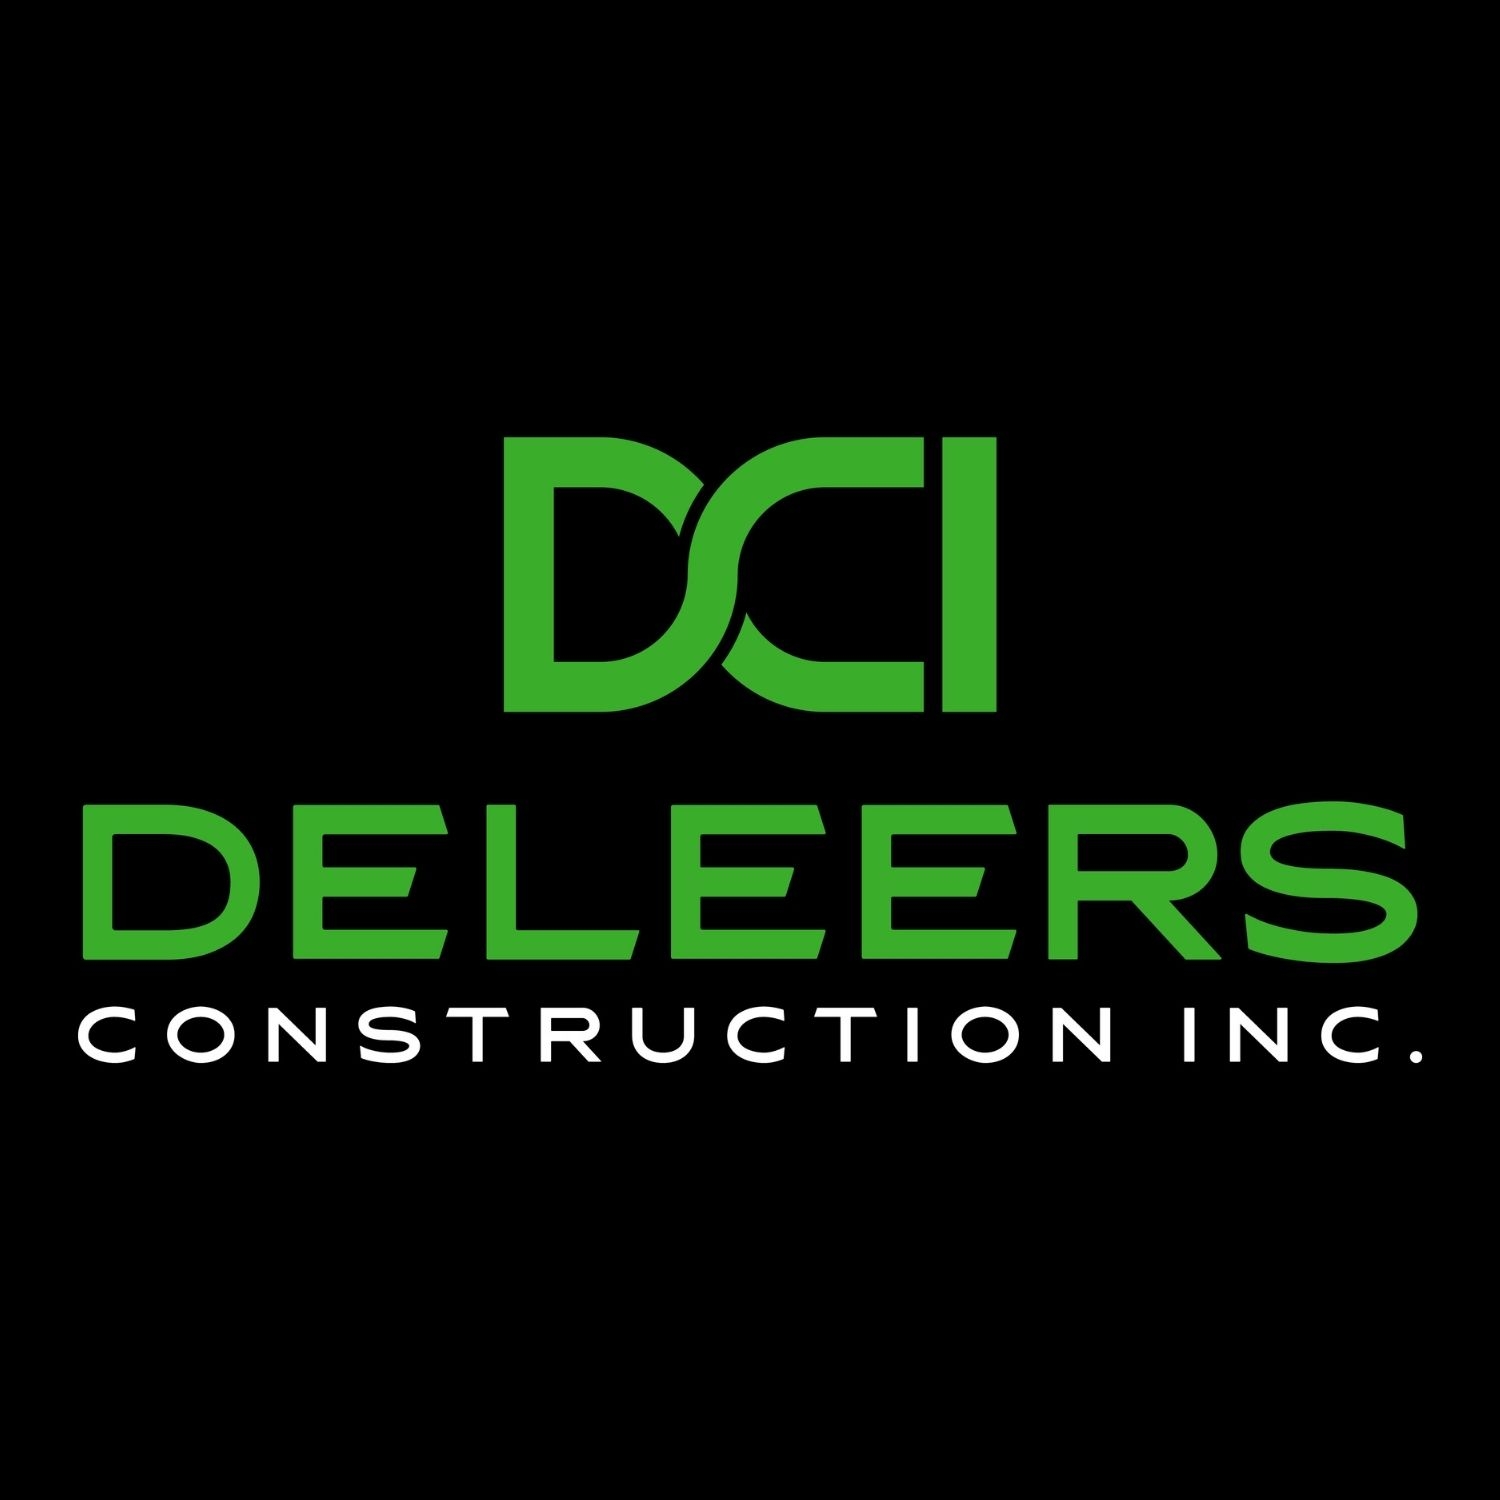 DeLeers Construction